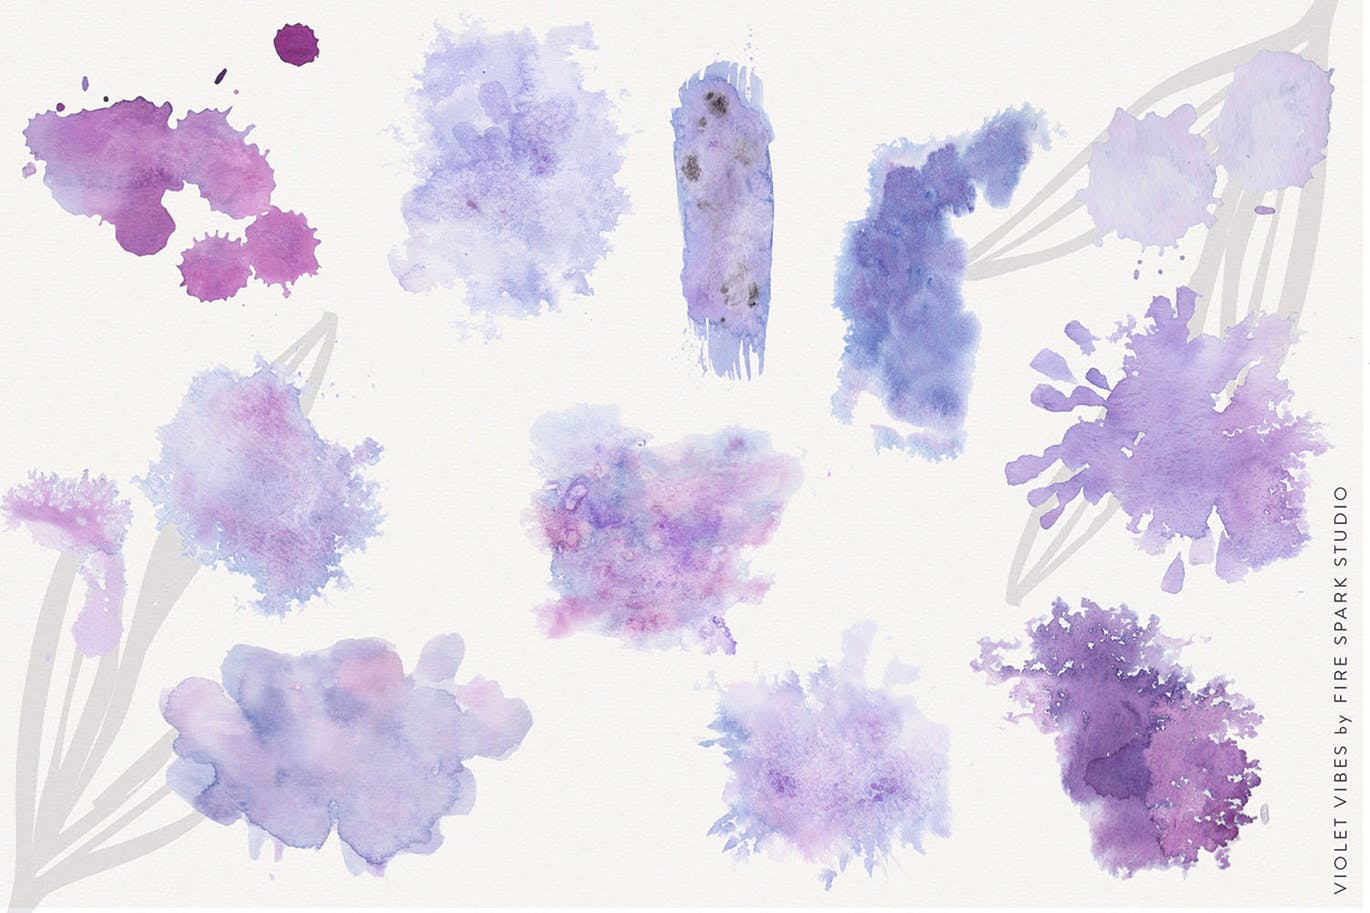 紫罗兰色时尚水彩手绘设计套件 Violet Vibes Graphic Art Kit插图(6)